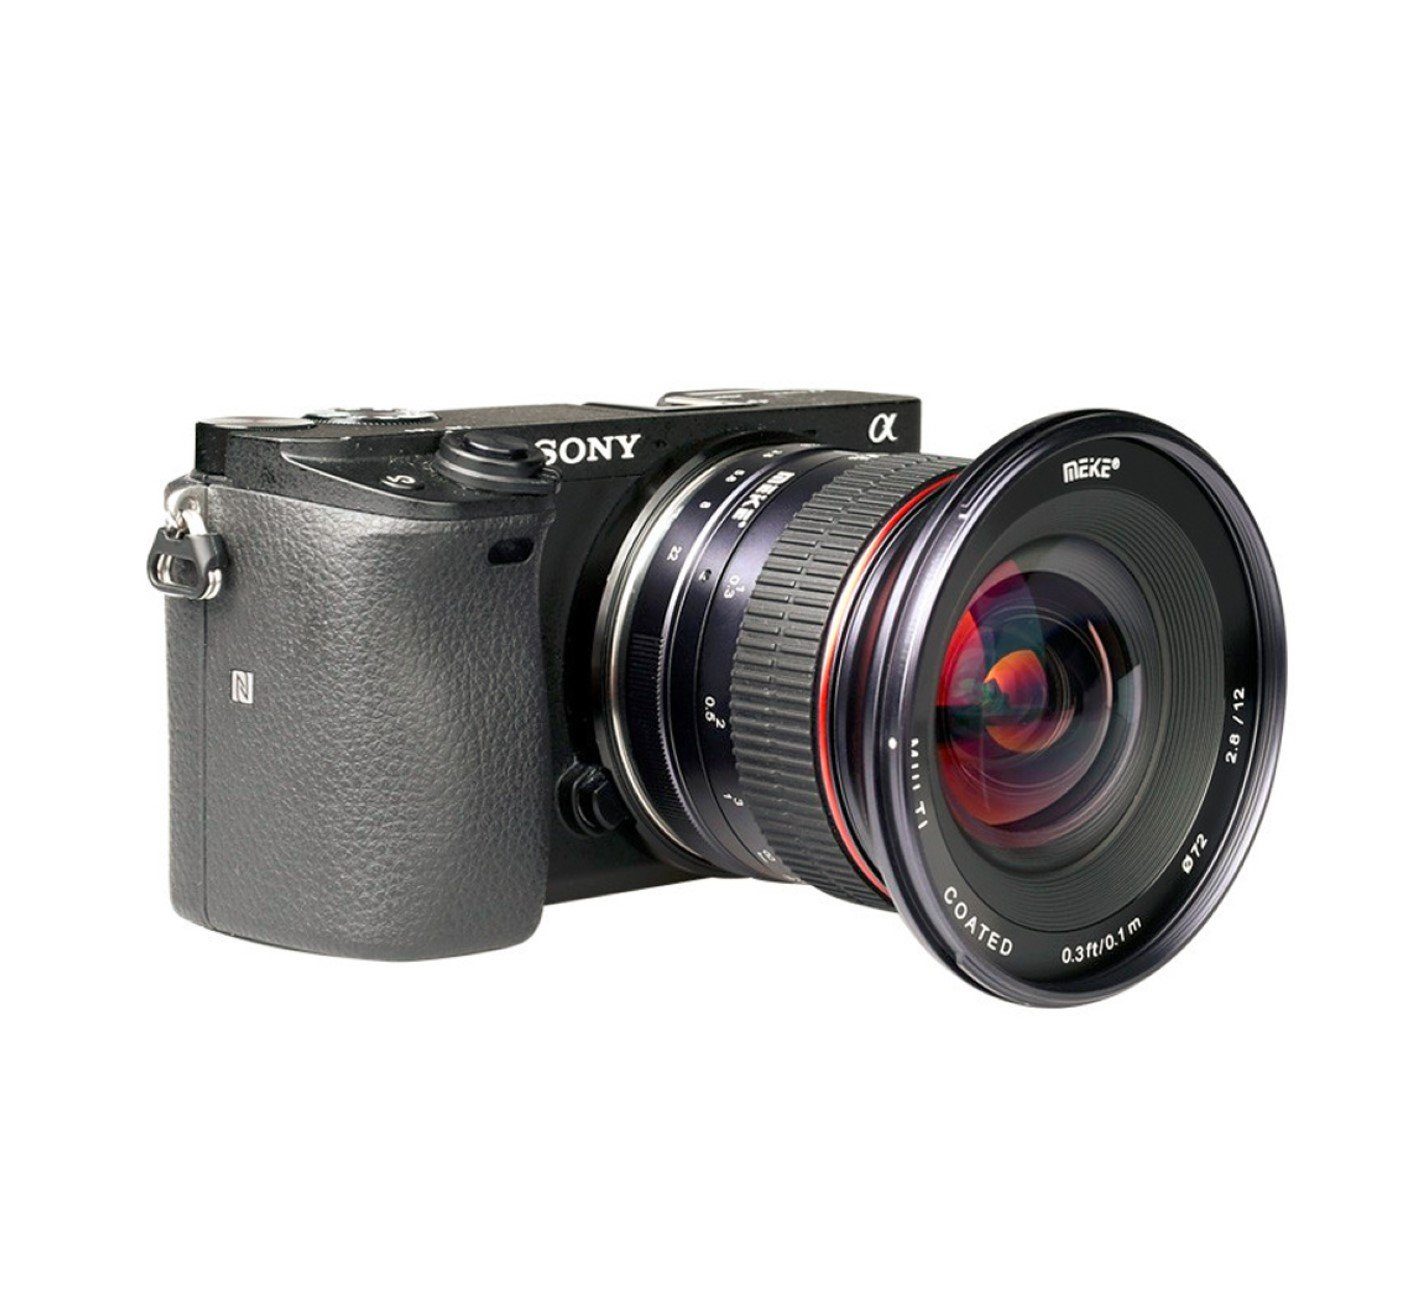 Meike Ultra-Weitwinkelobjektiv Objektiv Fujifilm MK-12mm-F/2.8 für X-Mount